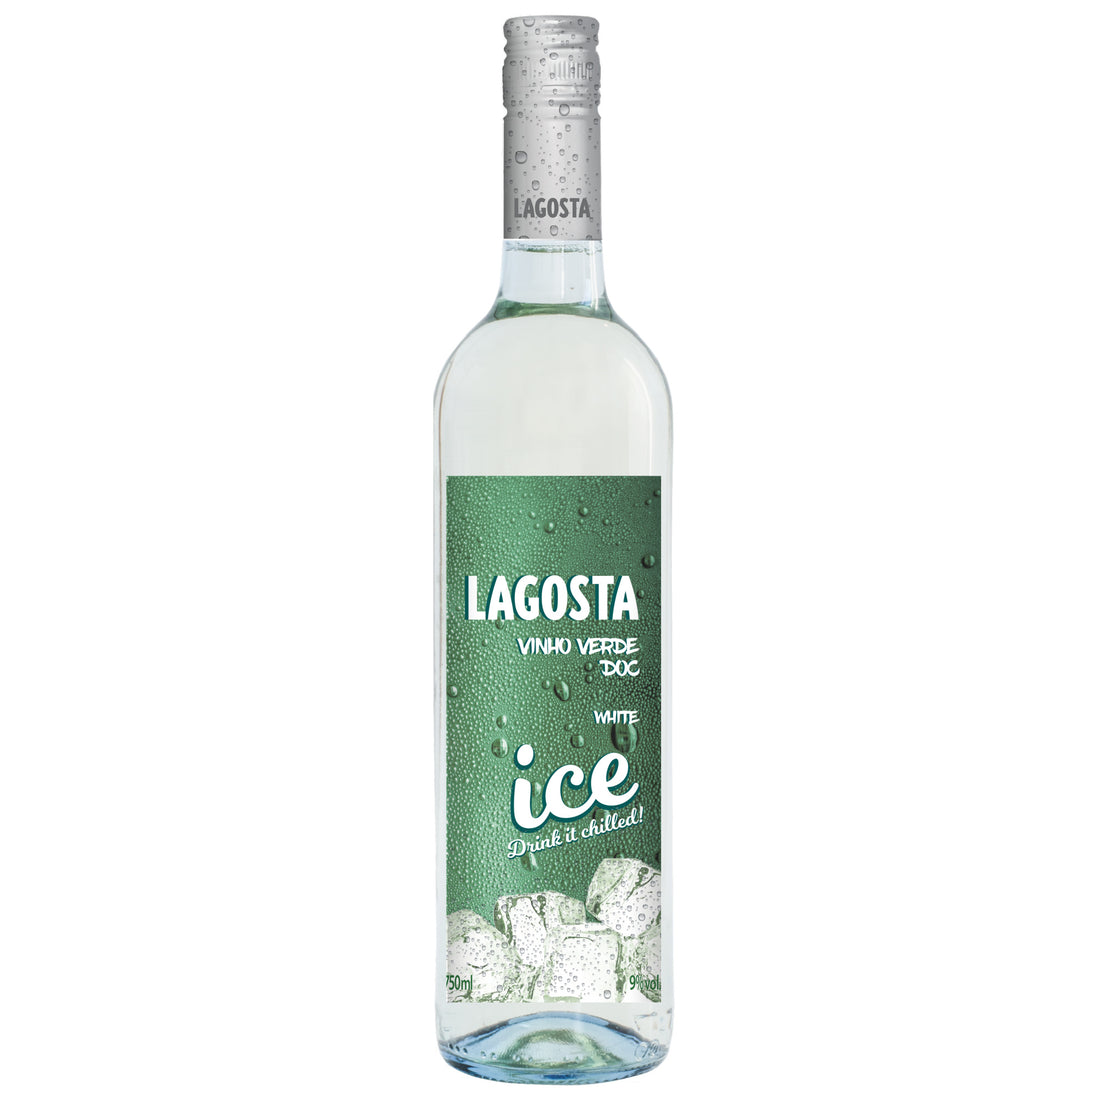 Lagosta Ice Vinho Verde White